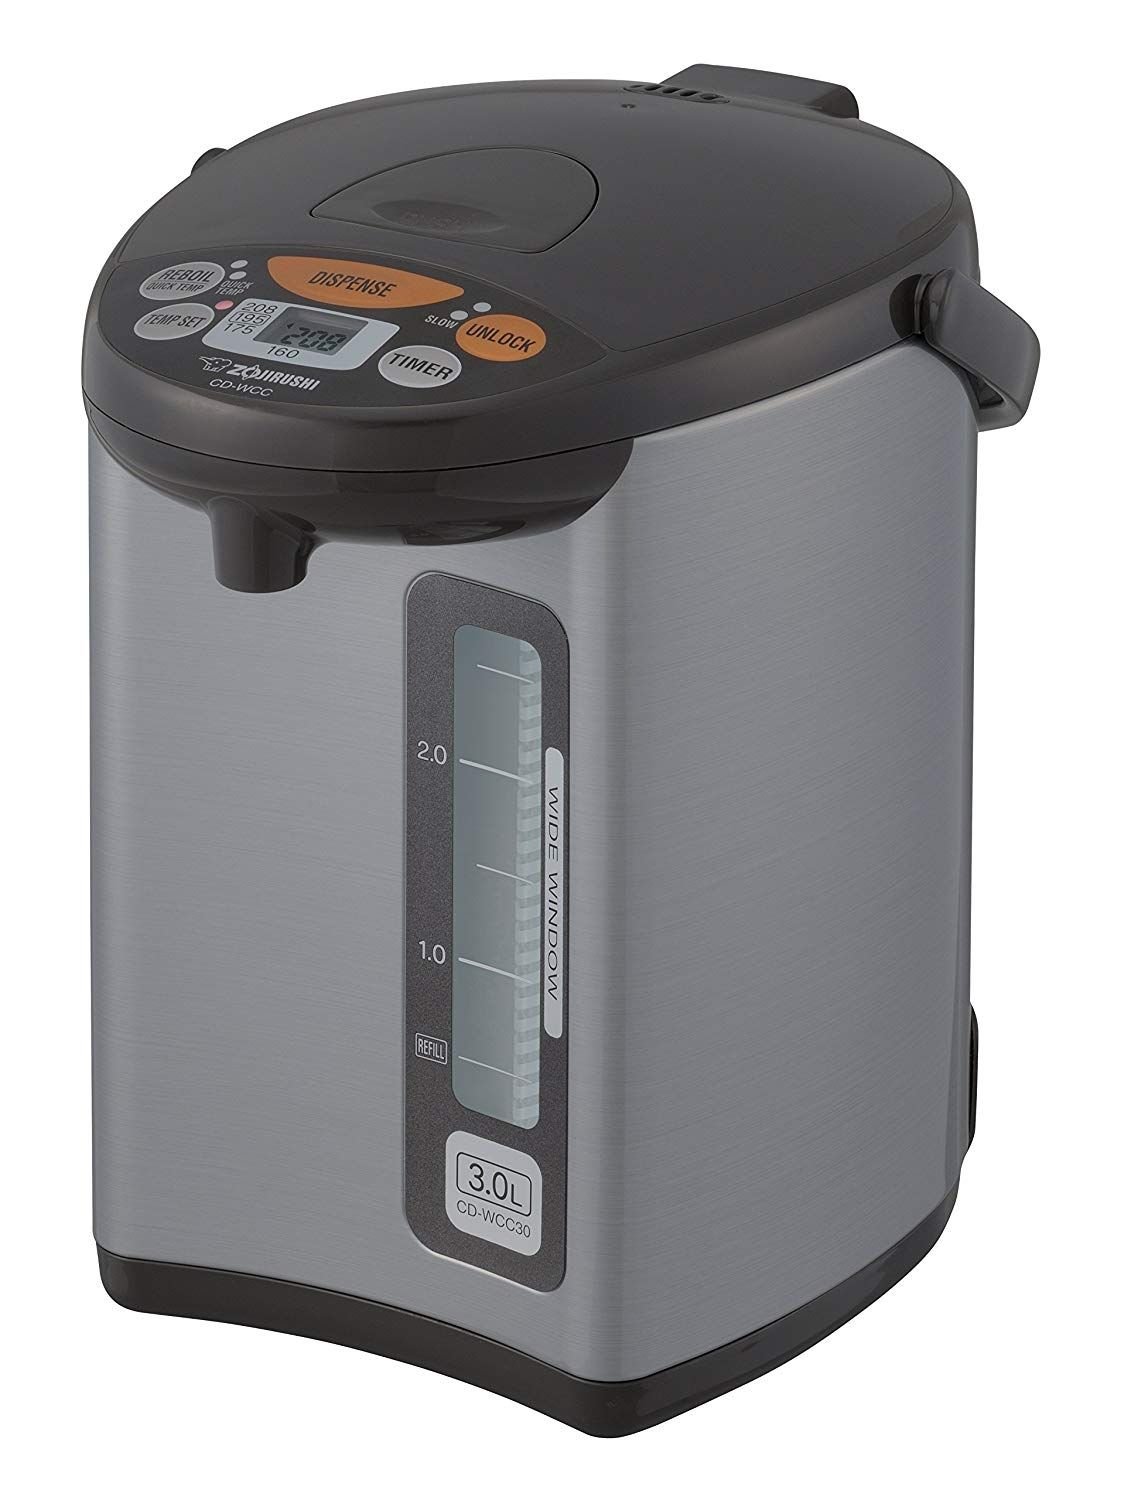 101oz Glass Beverage Dispenser - Water Dispenser for Countertop or Fridge 